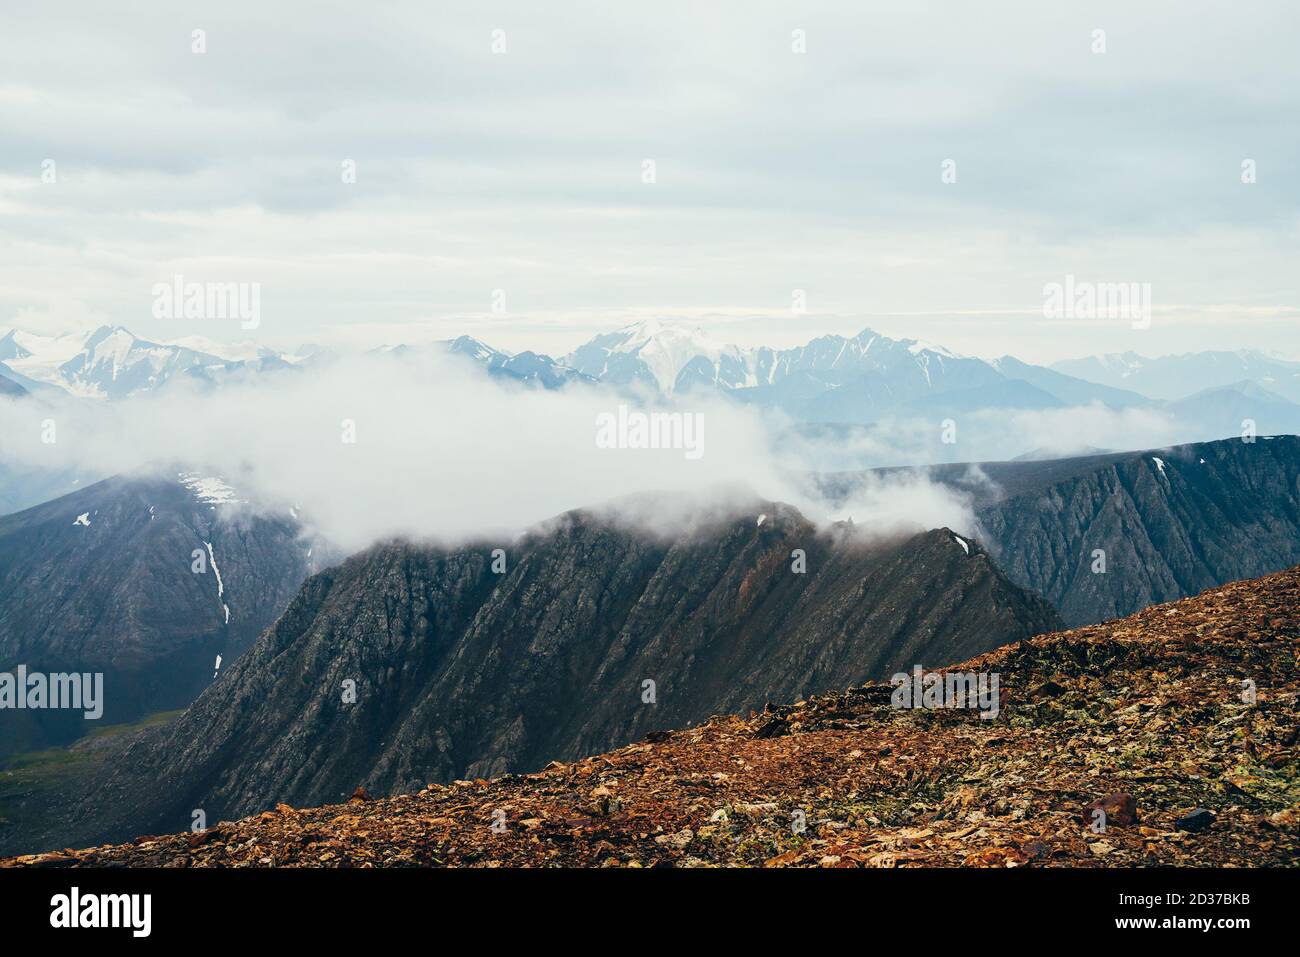 Paysage alpin avec de grandes rocheuses et des montagnes enneigées géantes avec glacier. Belle vue de la montagne pierreuse au nuage bas au-dessus de magnifique Banque D'Images